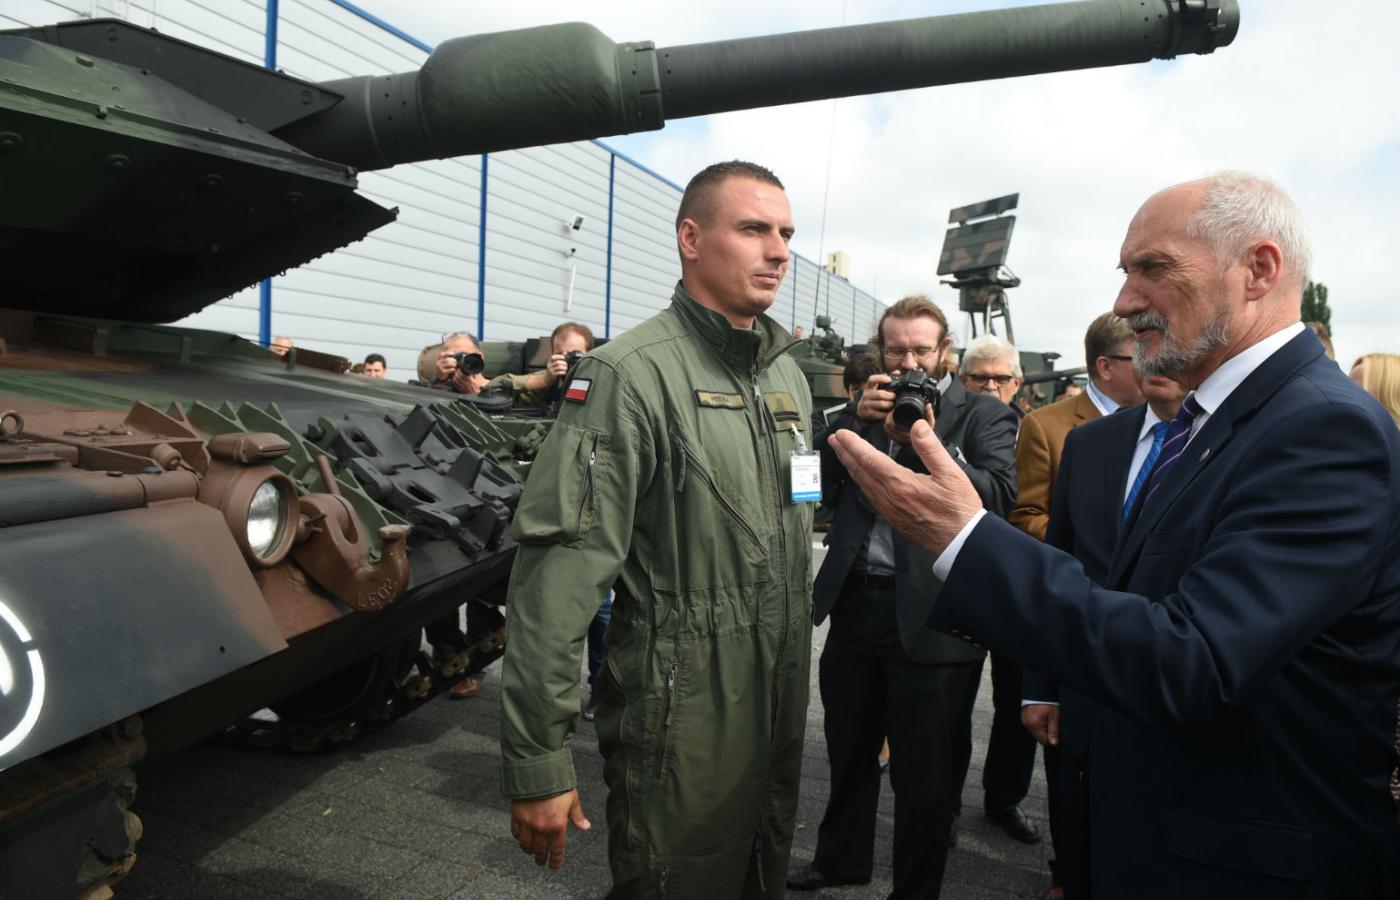 Teoretycznie mamy w linii 11 batalionów czołgów, co czyni Polskę główną pancerną potęgą w Europie.